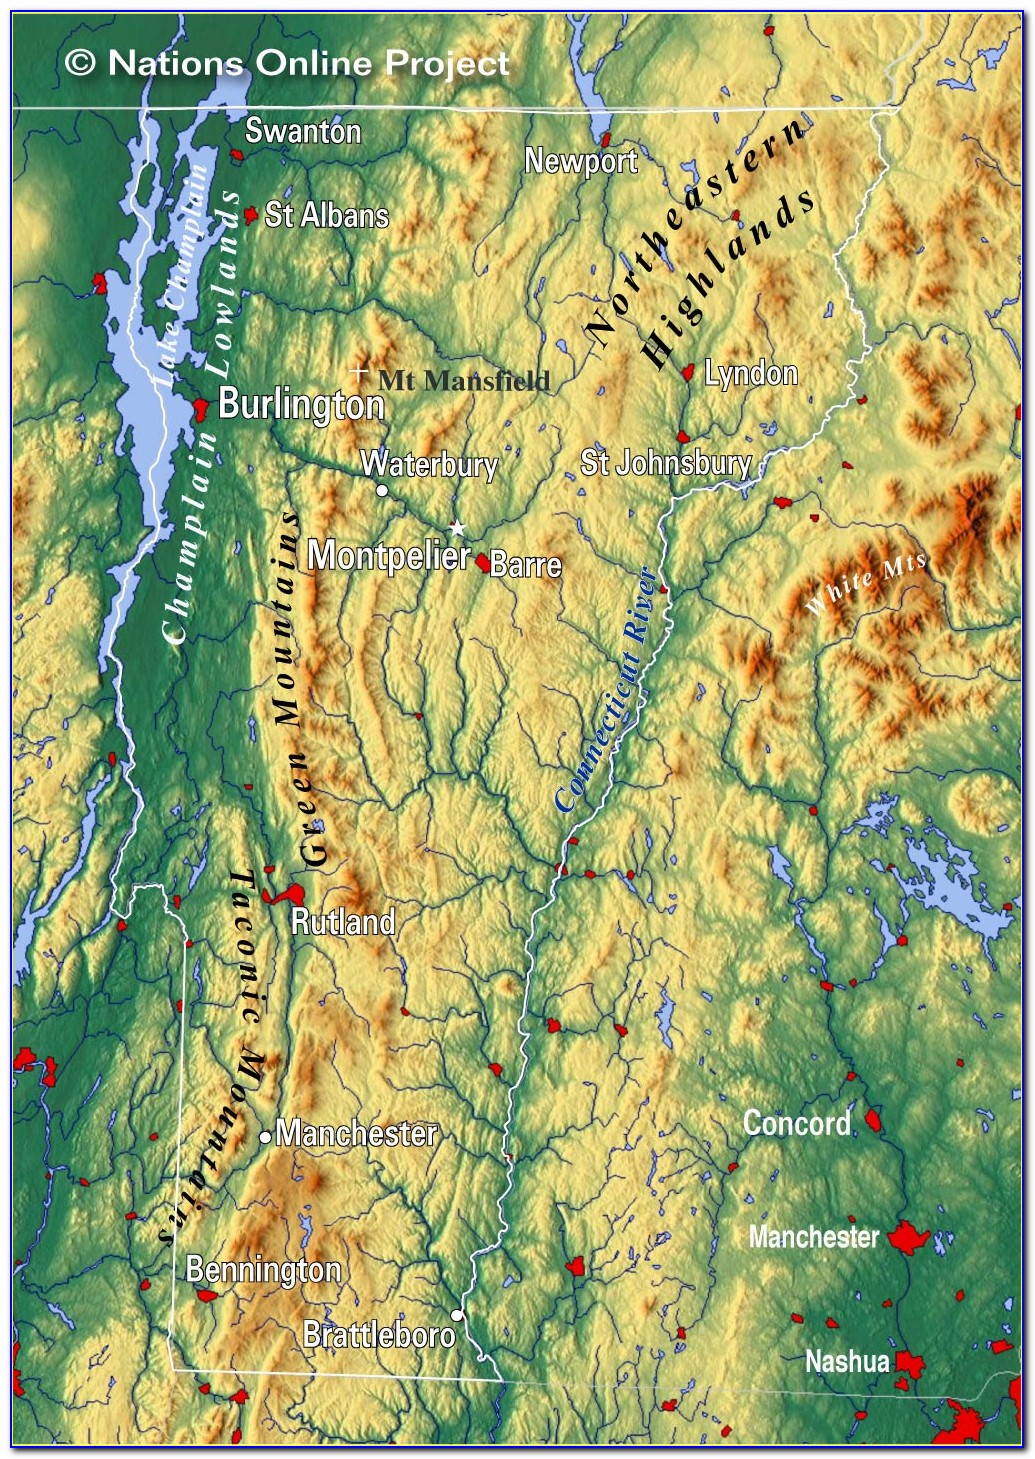 Vermont Topographic Map